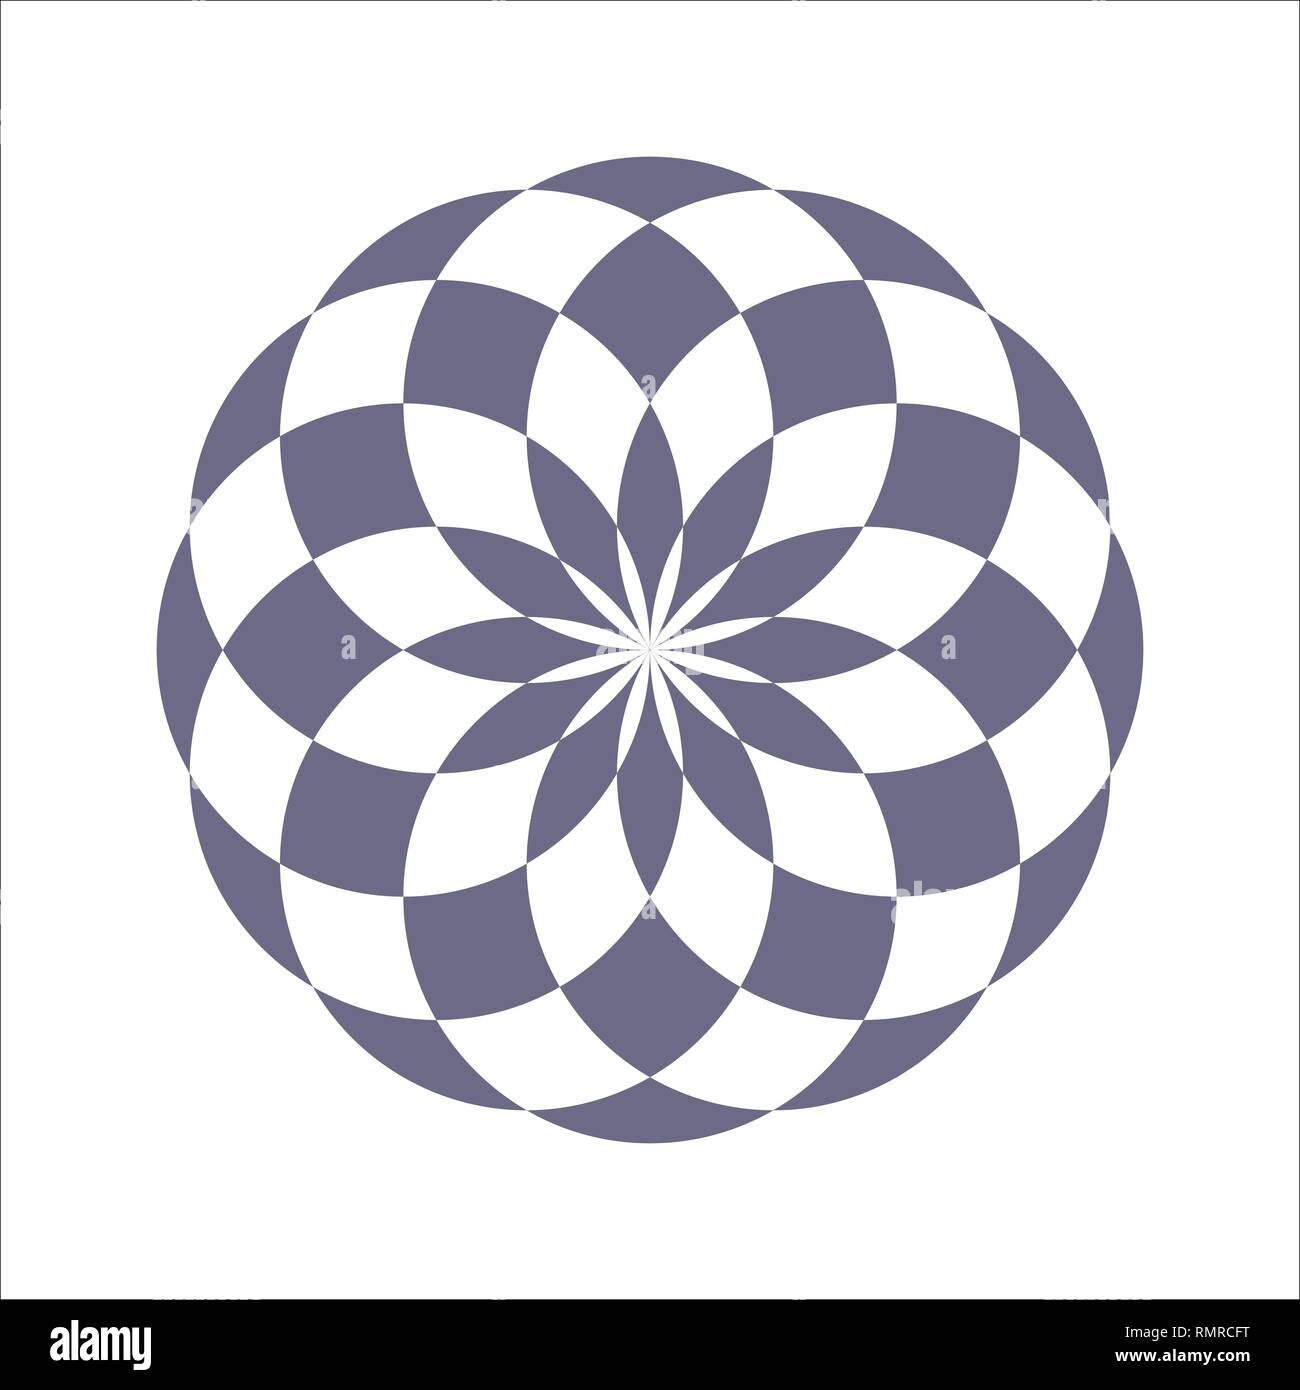 Monochrome elegante kreisförmigen Muster in Schwarz und Weiß. Kreisförmige mathematische Ornament. Ein Vektor kreisförmigen Muster von den gekreuzten Kreisen. Mandala. Stock Vektor